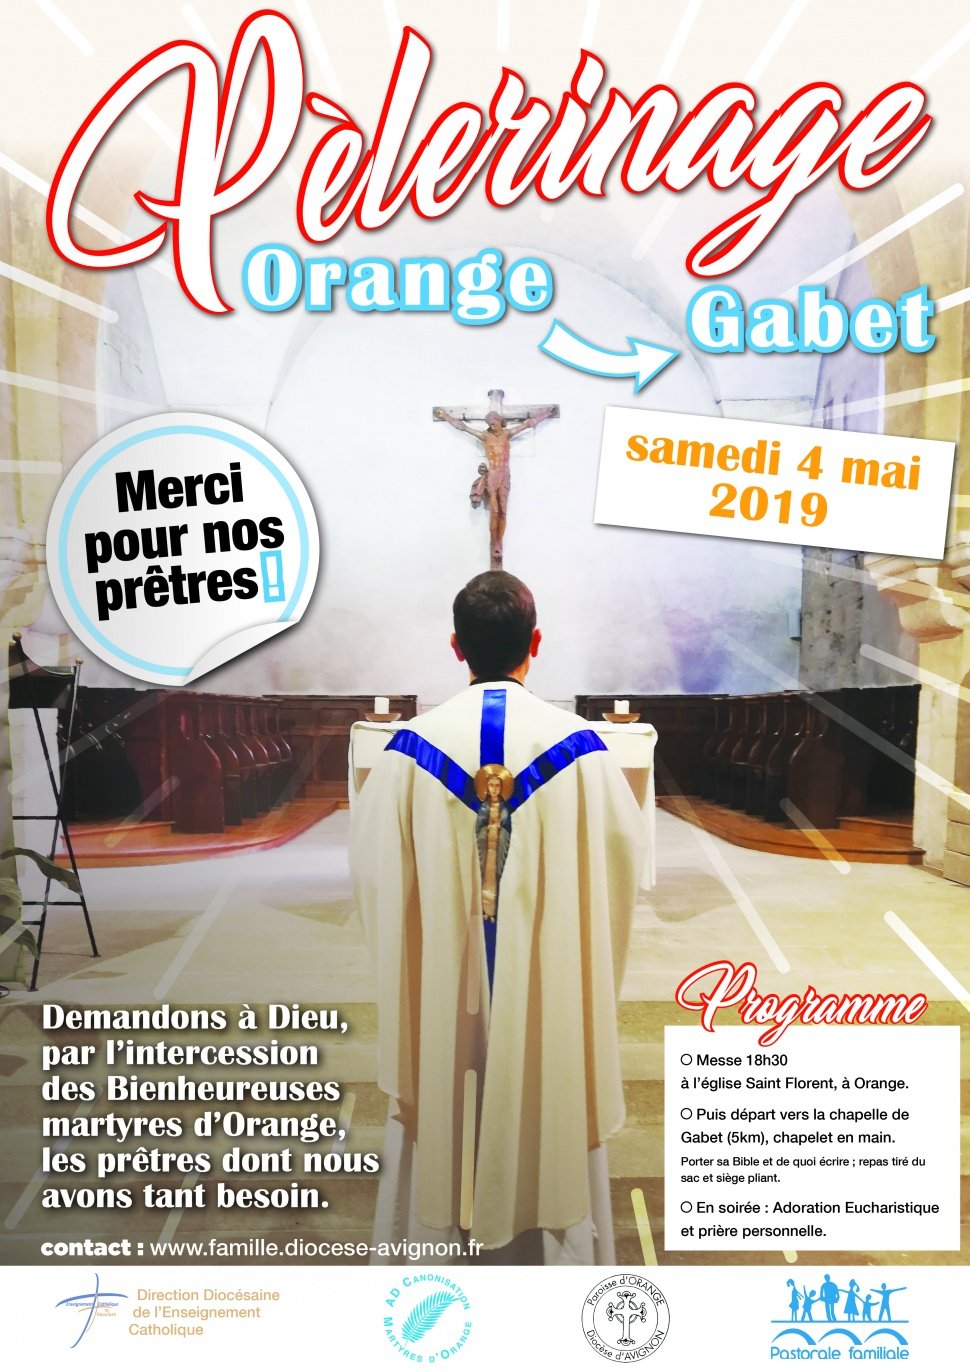 Pèlerinage de merci et de demande pour nos prêtres – le 4 mai 2019 à Orange (84)